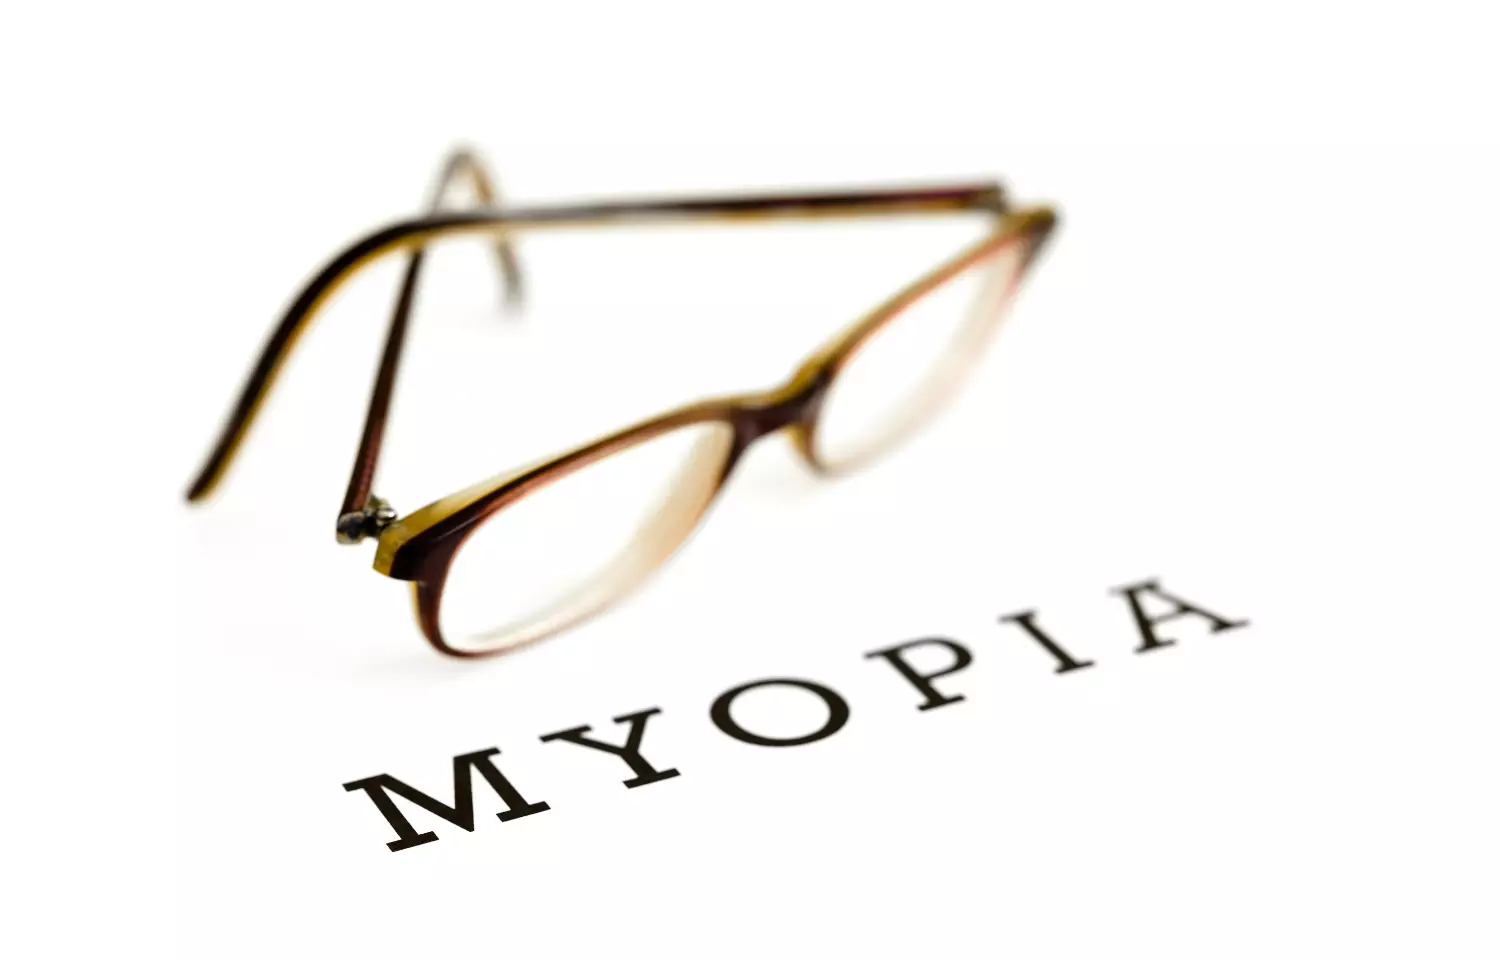 Low dose atropine effective in treating myopia in Indians